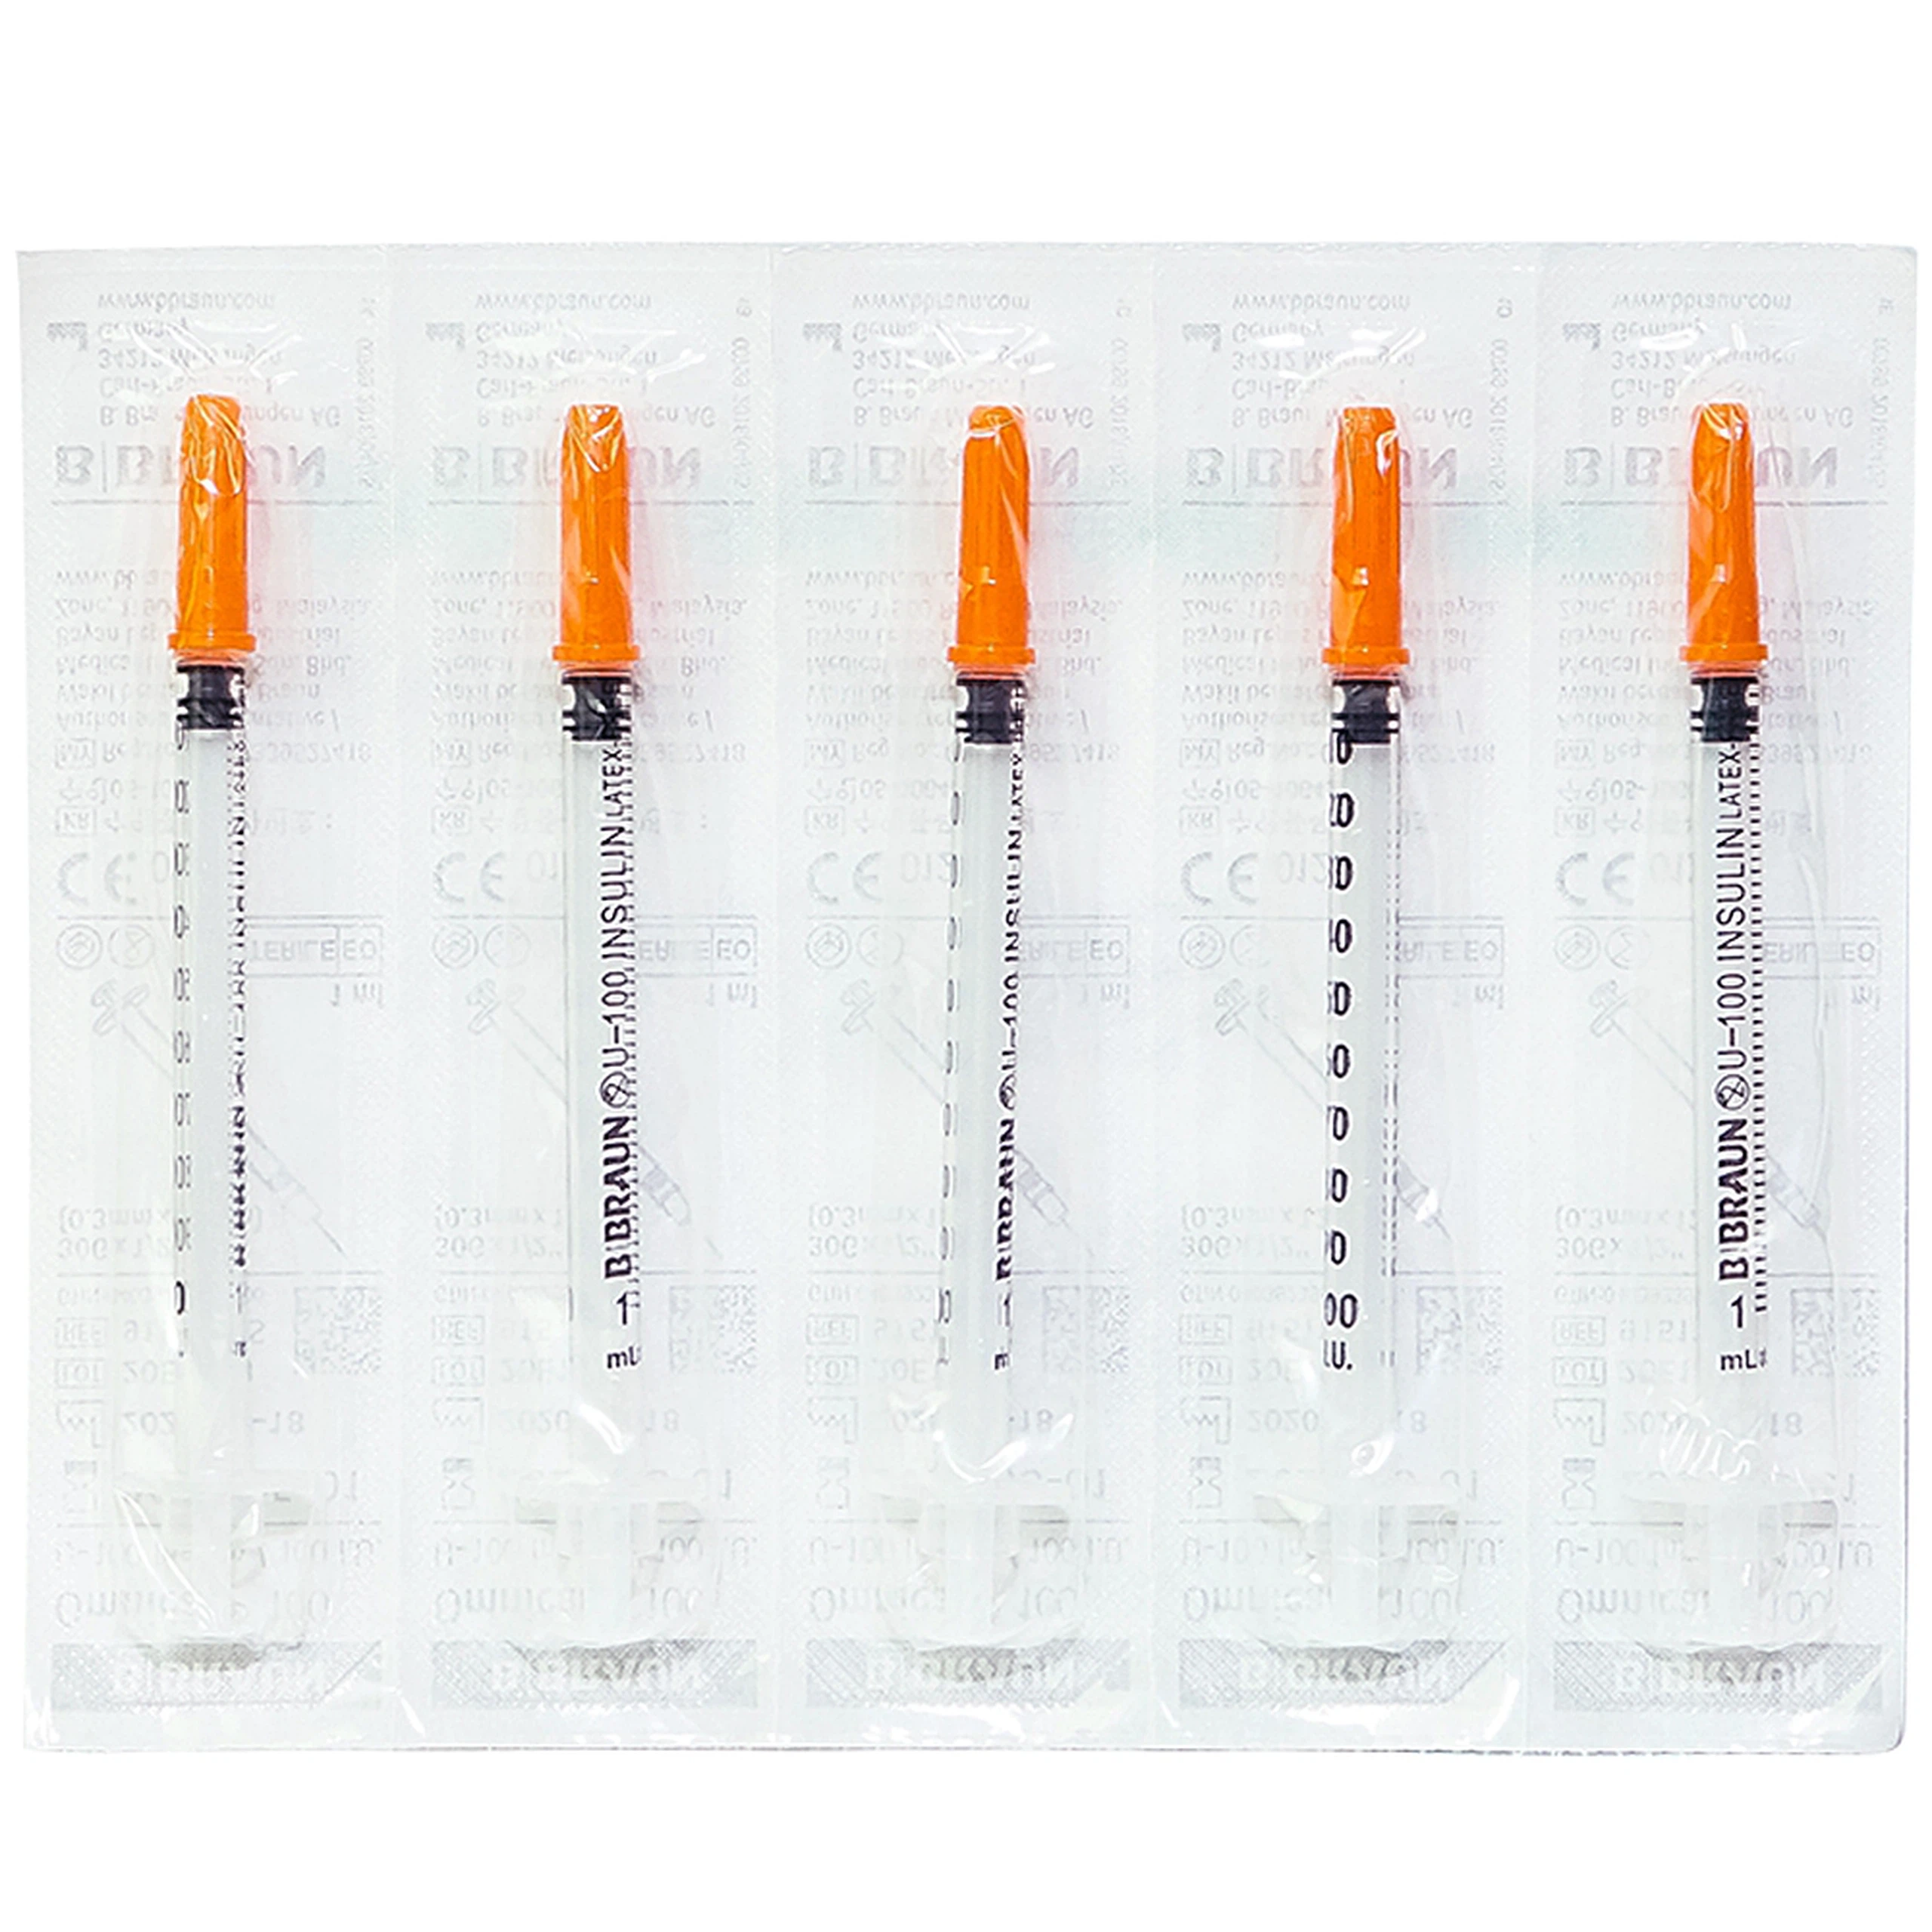 Kim tiêm tiểu đường B.Braun Omnican 1ml/100 I.U màu cam dùng cho người tiểu đường (100 cái)